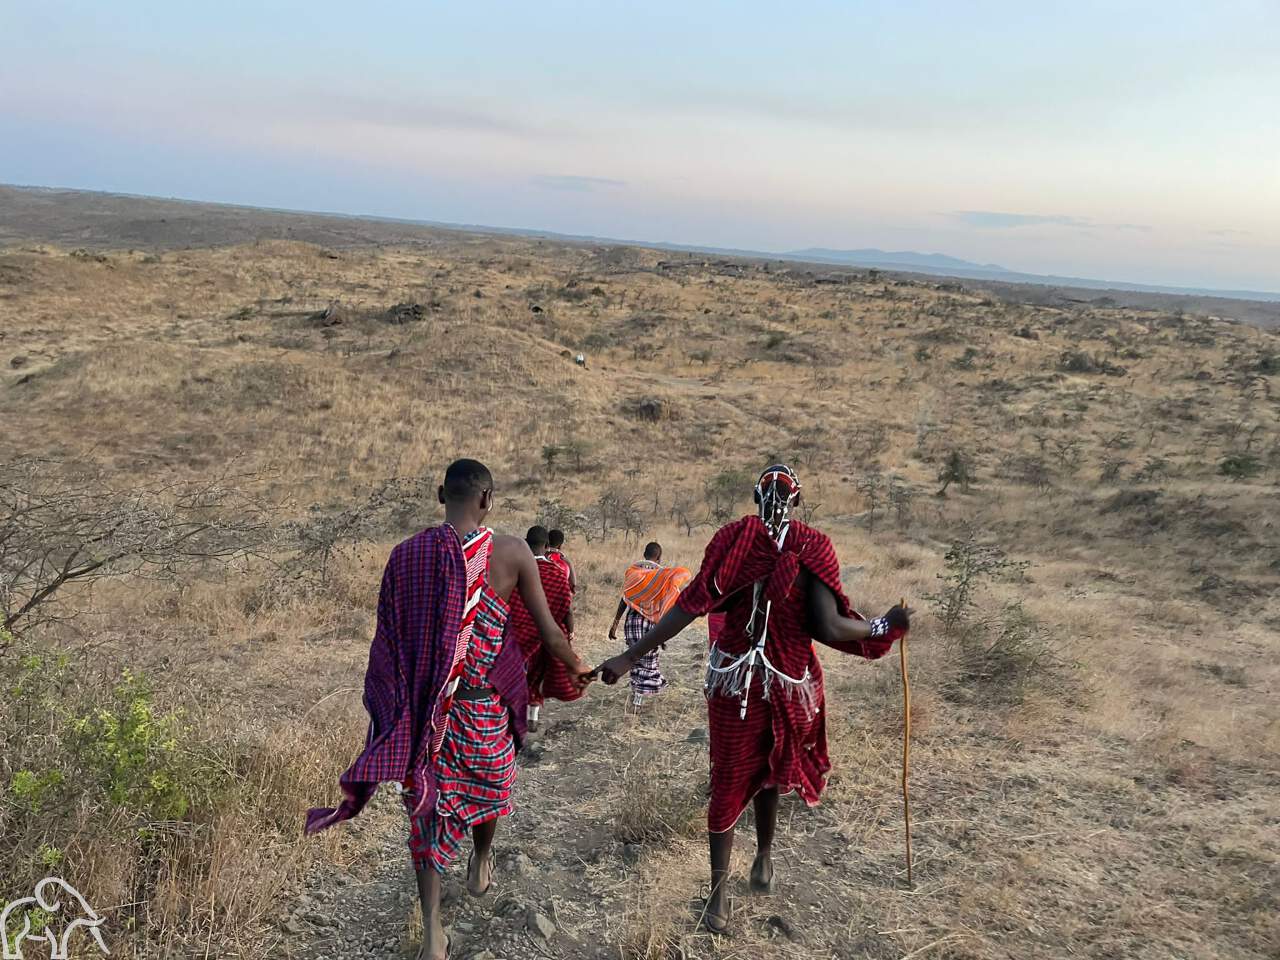 Rondreis door Tanzania. Er lopen 4 Masai mensen in gekleurde gewaden over de vlaktes. Twee hebben elkaars hand vast